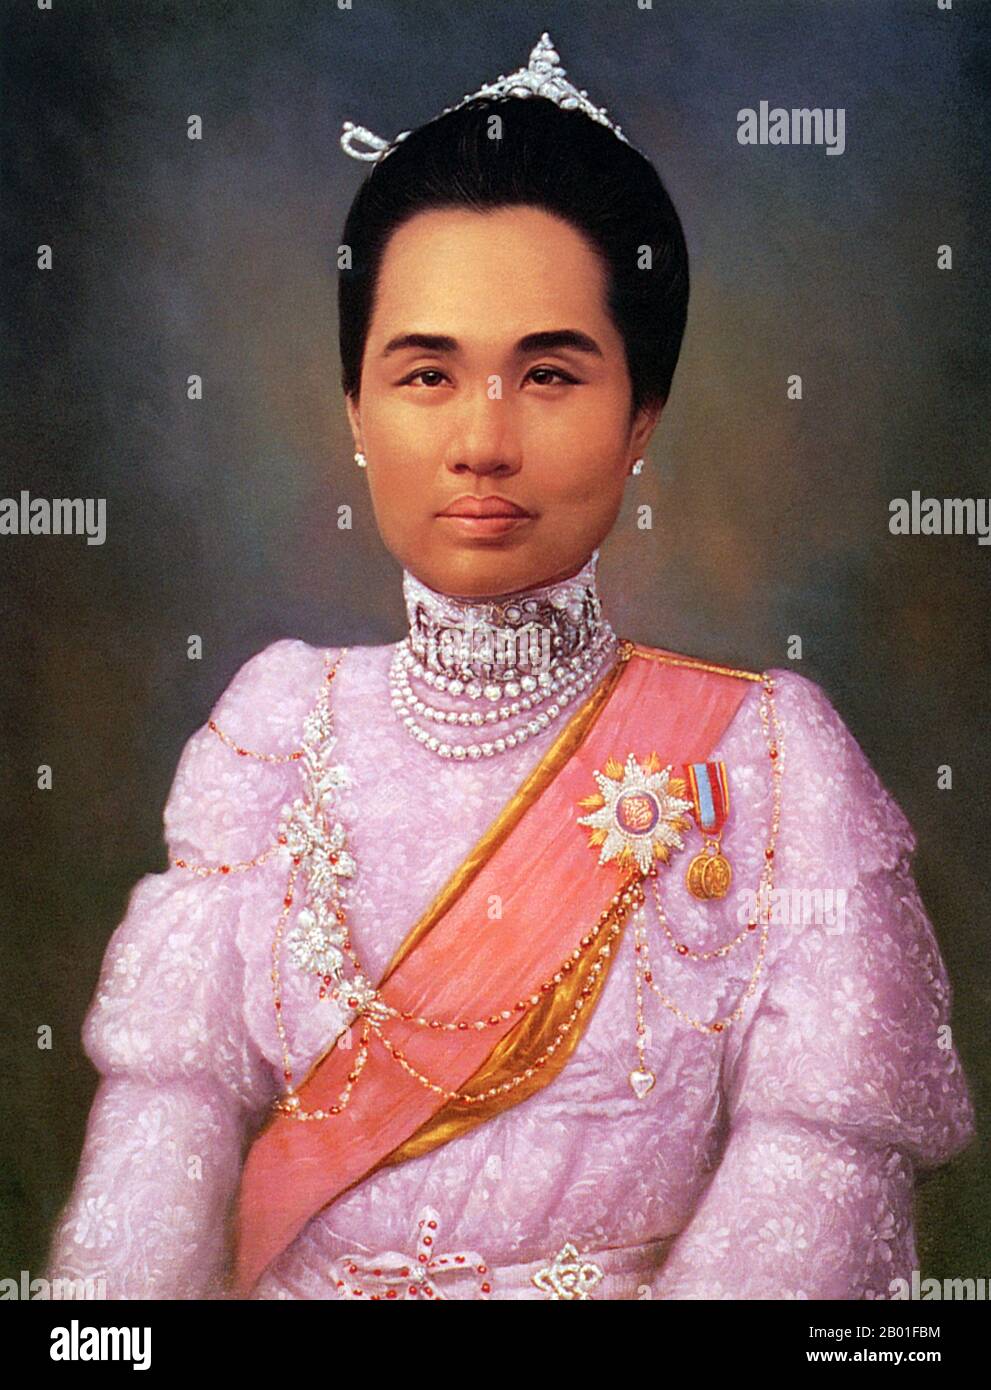 Thailandia: Principessa Consort Dara Rasmi (26 agosto 1873 - 9 dicembre 1933), ritratto ufficiale come consort di re Chulalongkorn, inizio 20th ° secolo. La principessa Dara Rasmi era la principessa di Chiang mai e Siam (in seguito Thailandia) e la figlia del re Inthawichayanon e della regina Thipkraisorn Rajadewi di Chang mai, una scion della dinastia Chao Chet Ton. Fu una delle principesse consorte di Chulalongkorn, re Rama V di Siam, e diede alla luce una figlia del re Chulalongkorn, principessa Vimolnaka Nabisi. Nel 1886 lasciò Chiang mai per entrare nel Grand Palace di Bangkok. Foto Stock